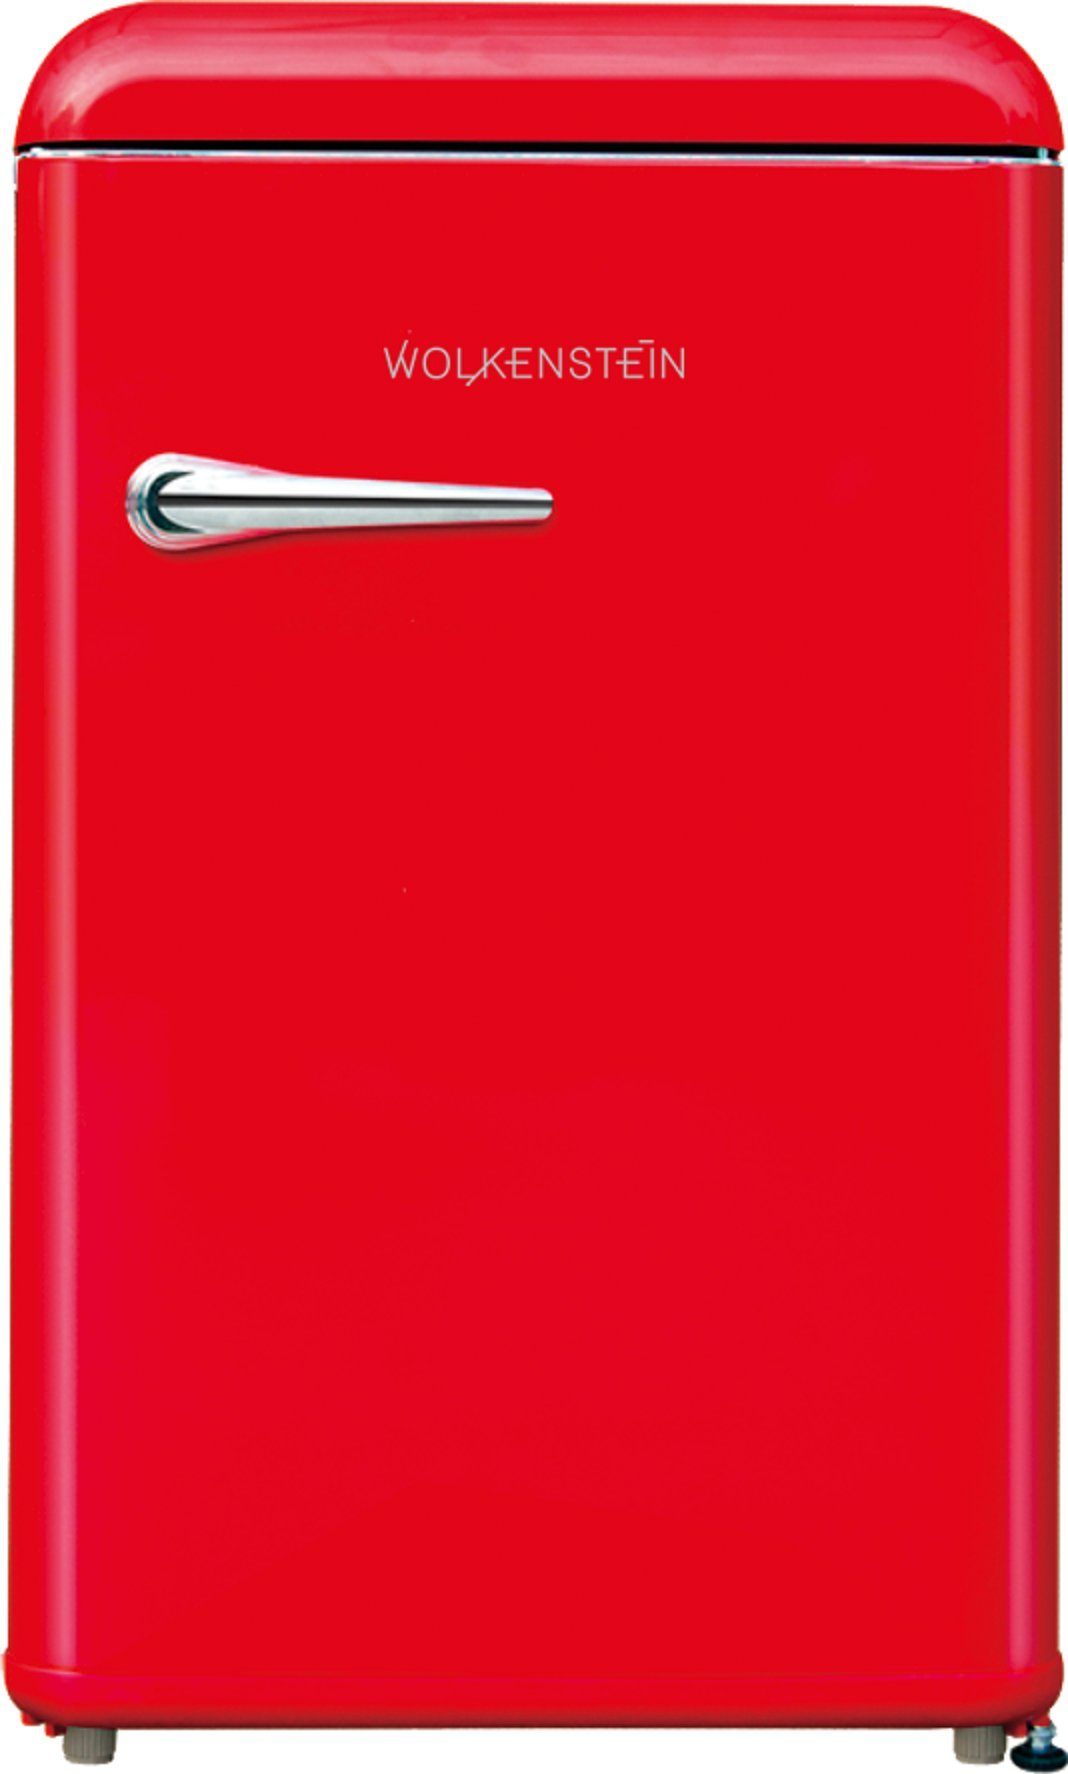 Wolkenstein WKS125RT Kühlschrank FR Rot